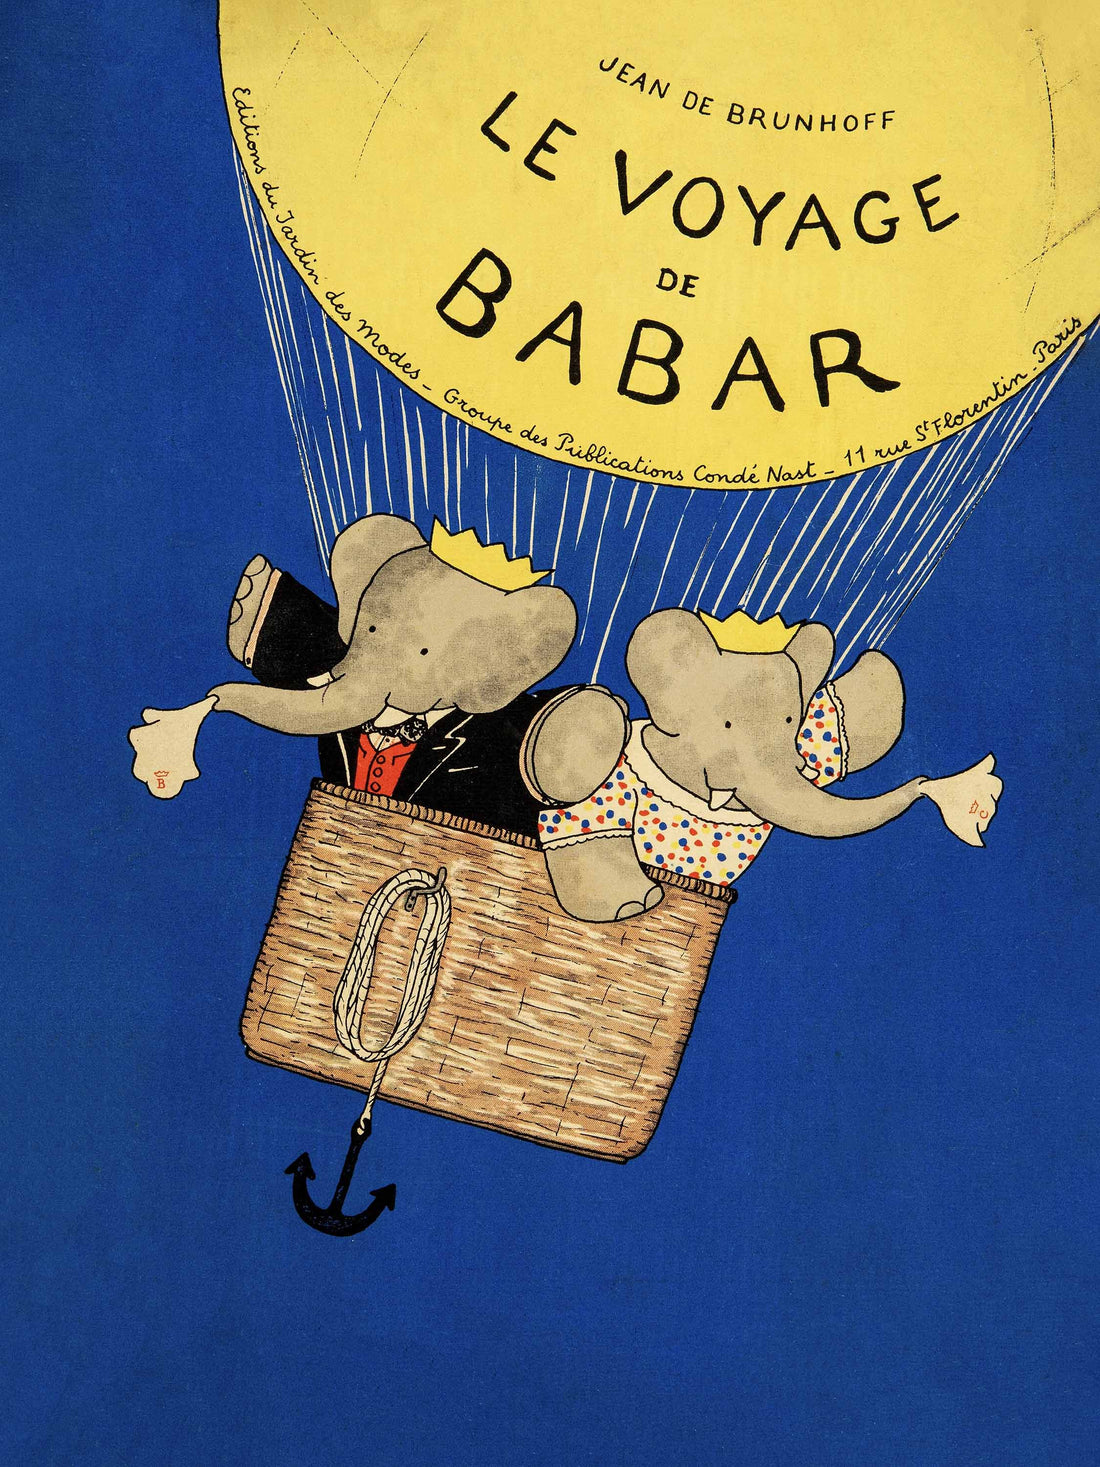 Voyage de Babar